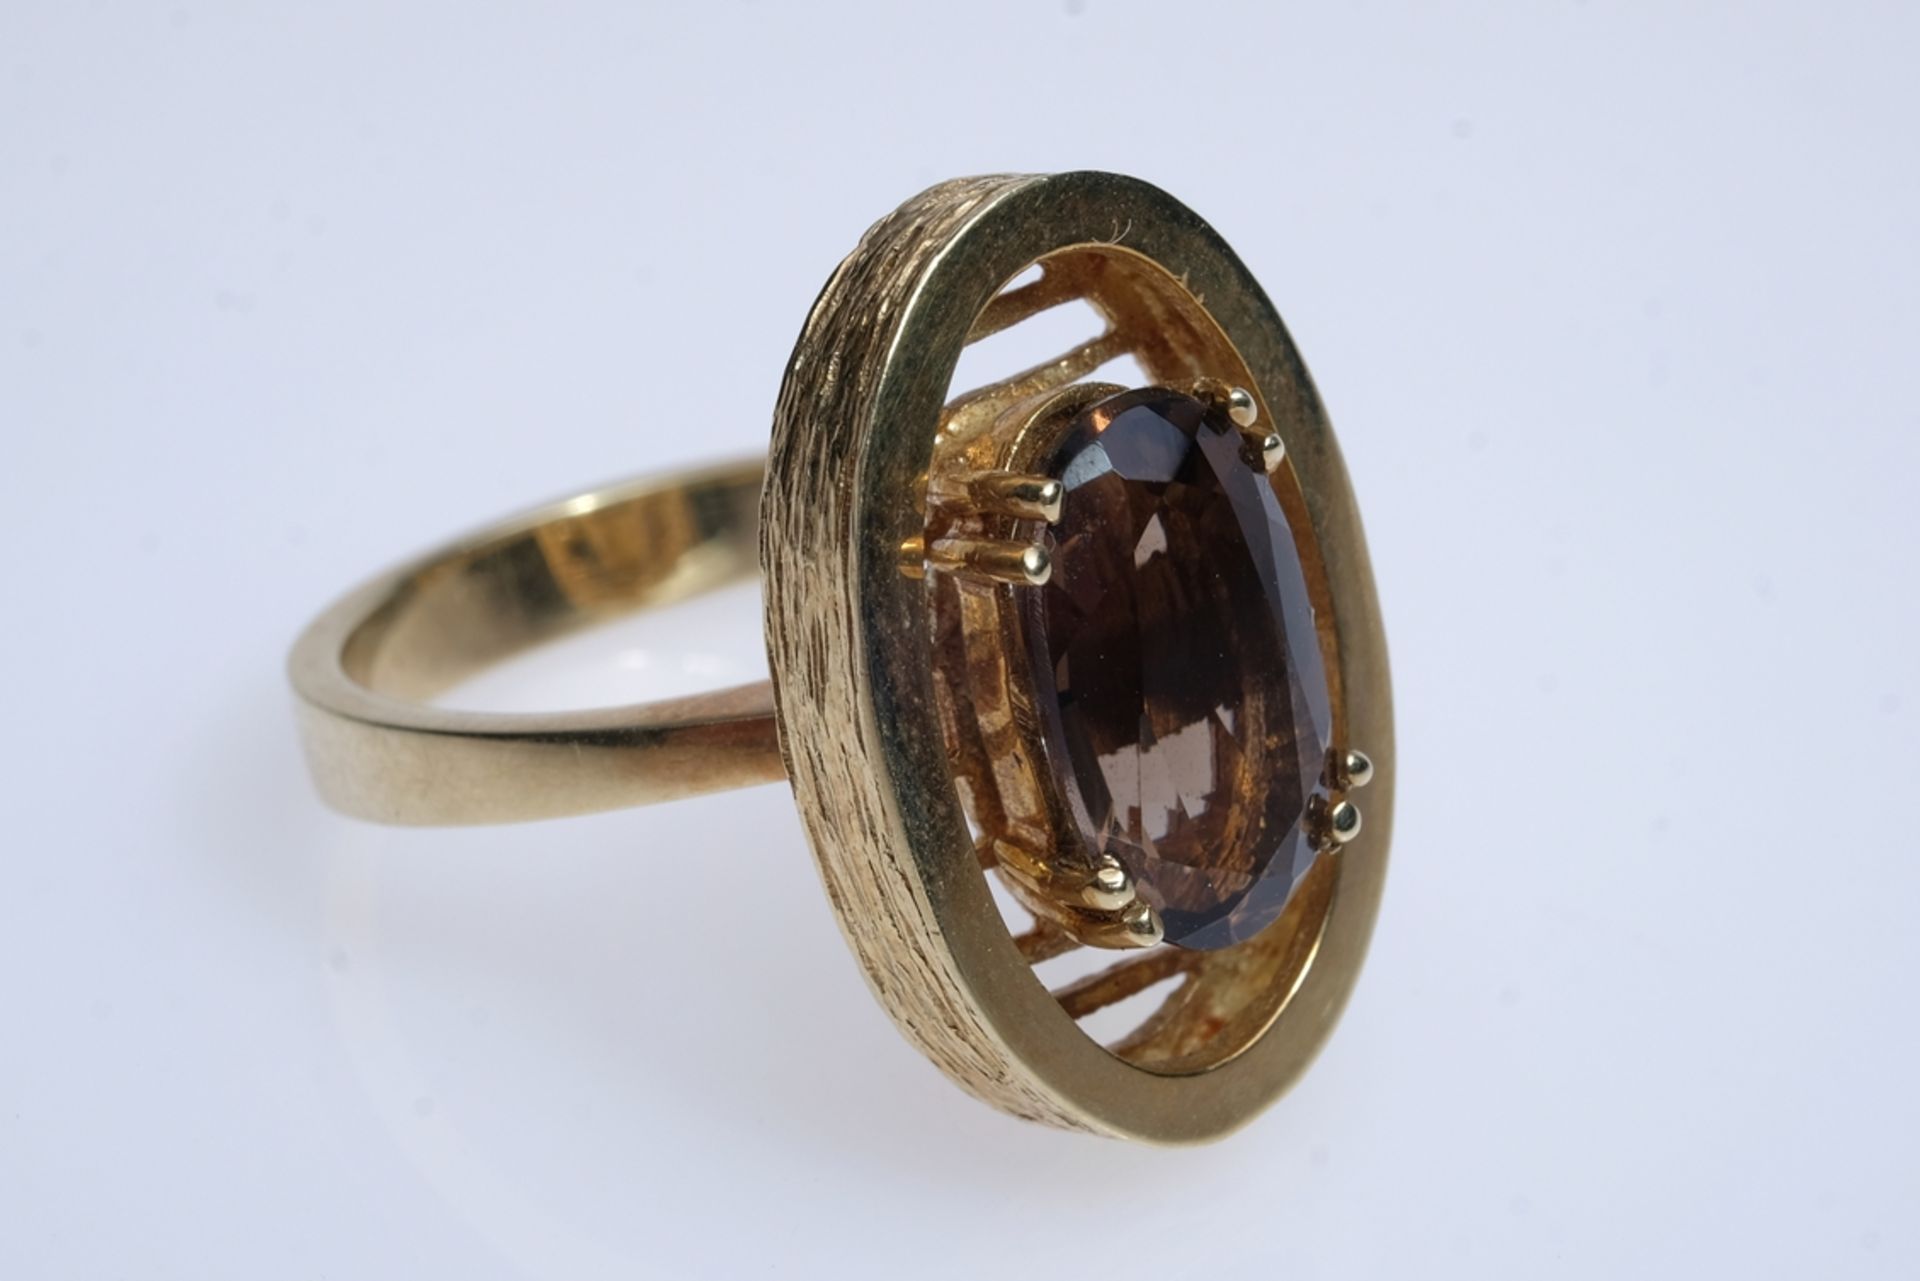 Ring mit oval geschliffener Stein (7x11mm), wohl Smoky Quartz, in vier Doppel-Krappen gefasst, Seit - Bild 3 aus 4